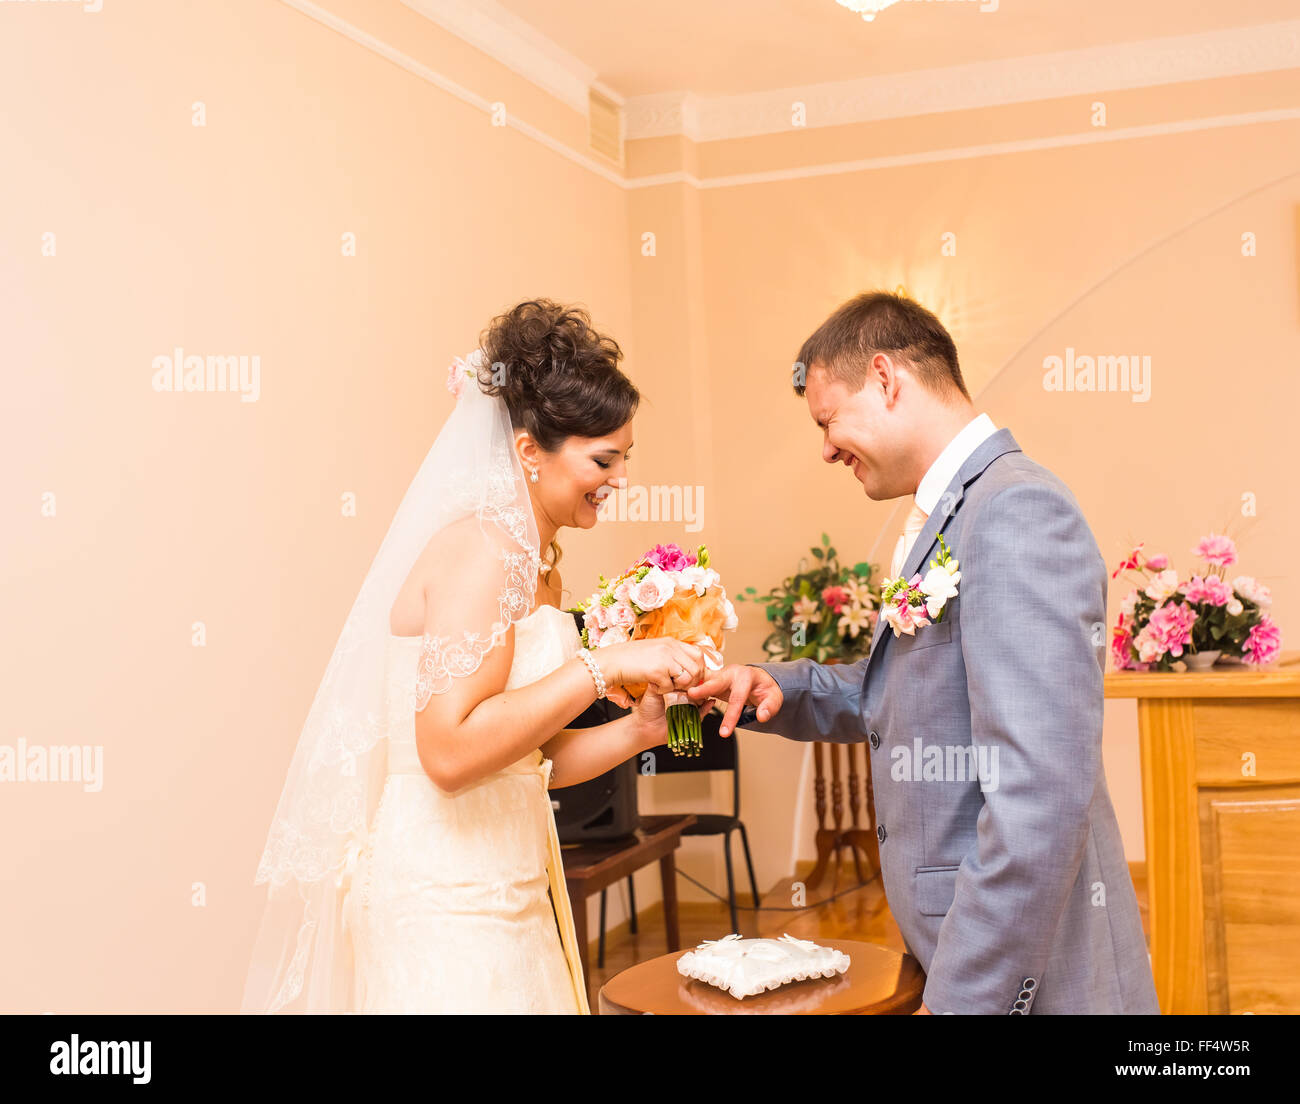 Cérémonie de mariage dans un bureau d'peinture, le mariage. Banque D'Images